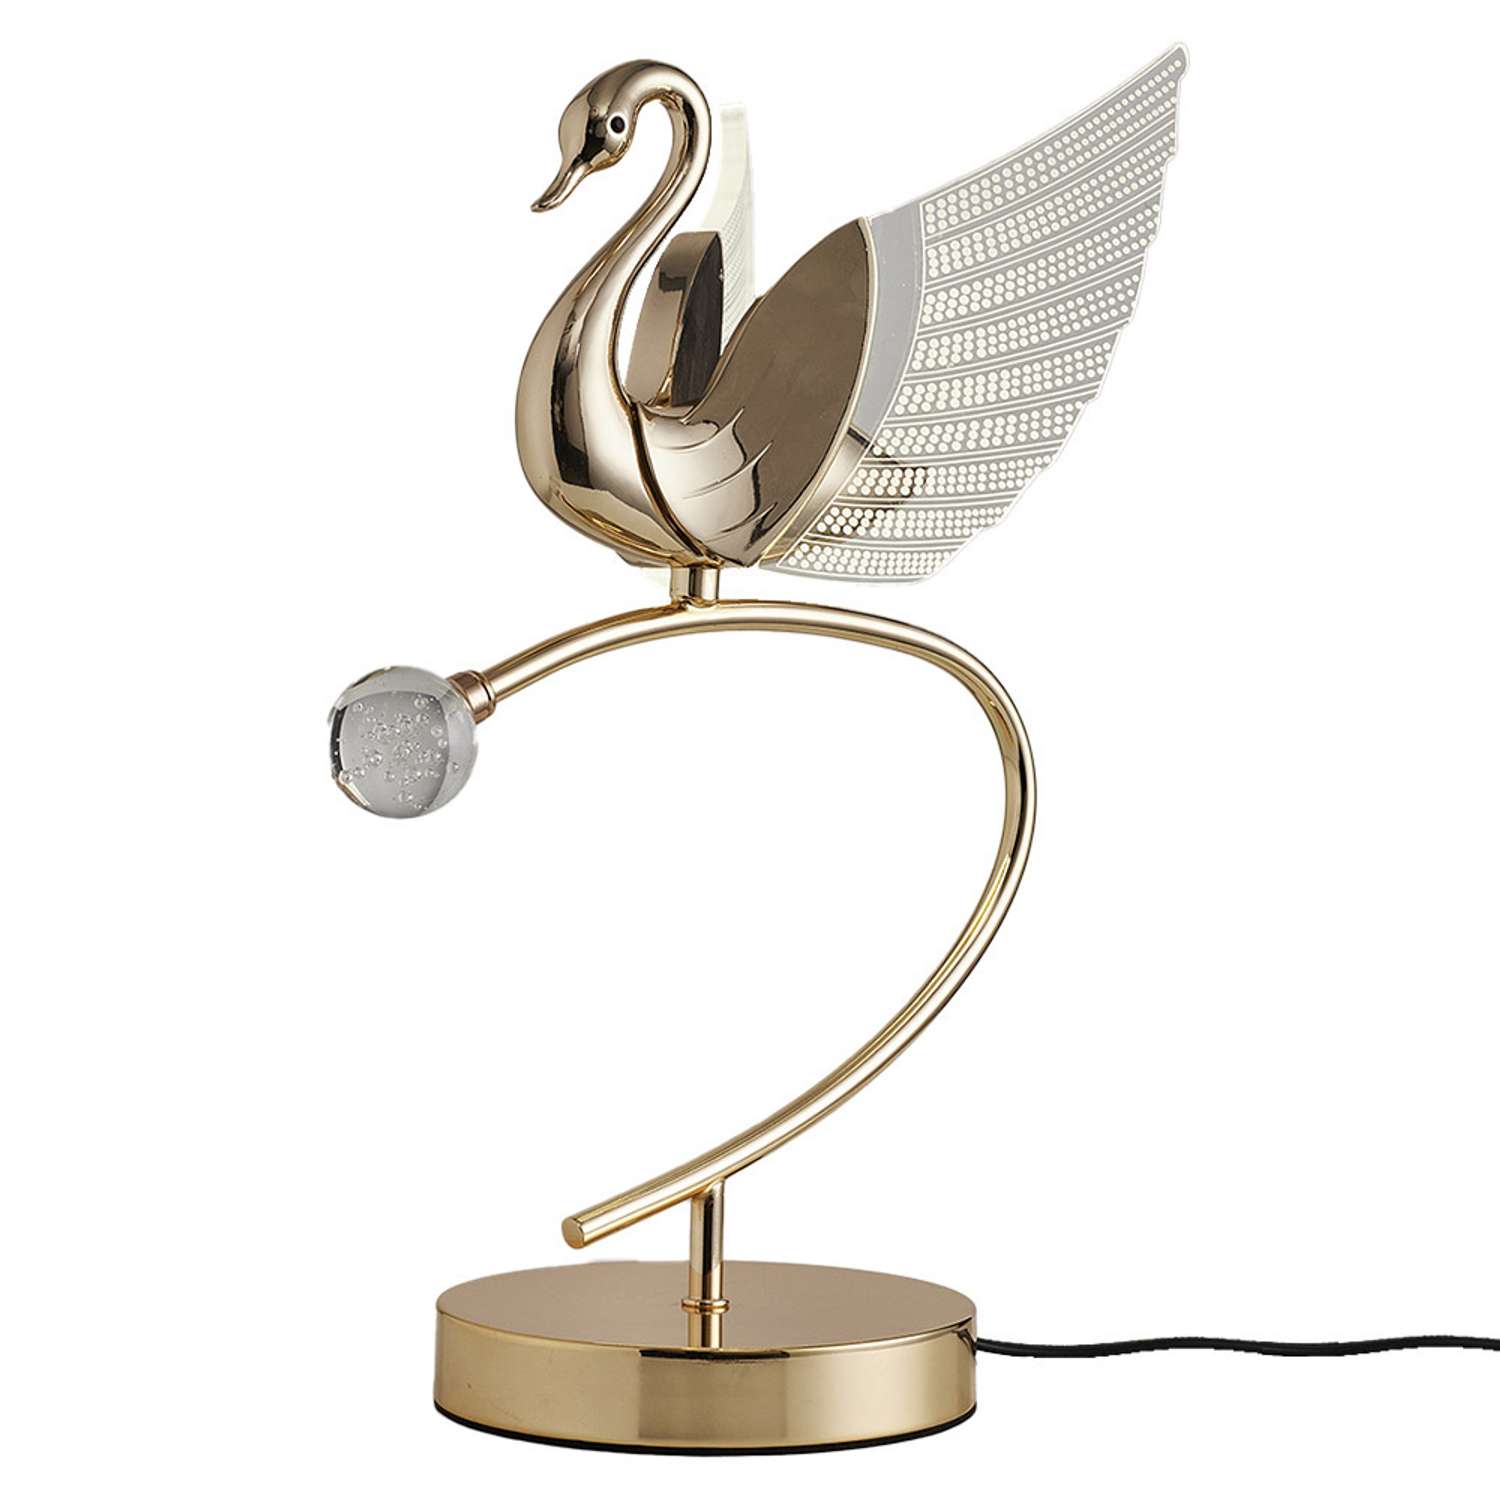 Настольный светильник LLL KT8946 золотой Птицы с вращением на 360 градусов - фото 1